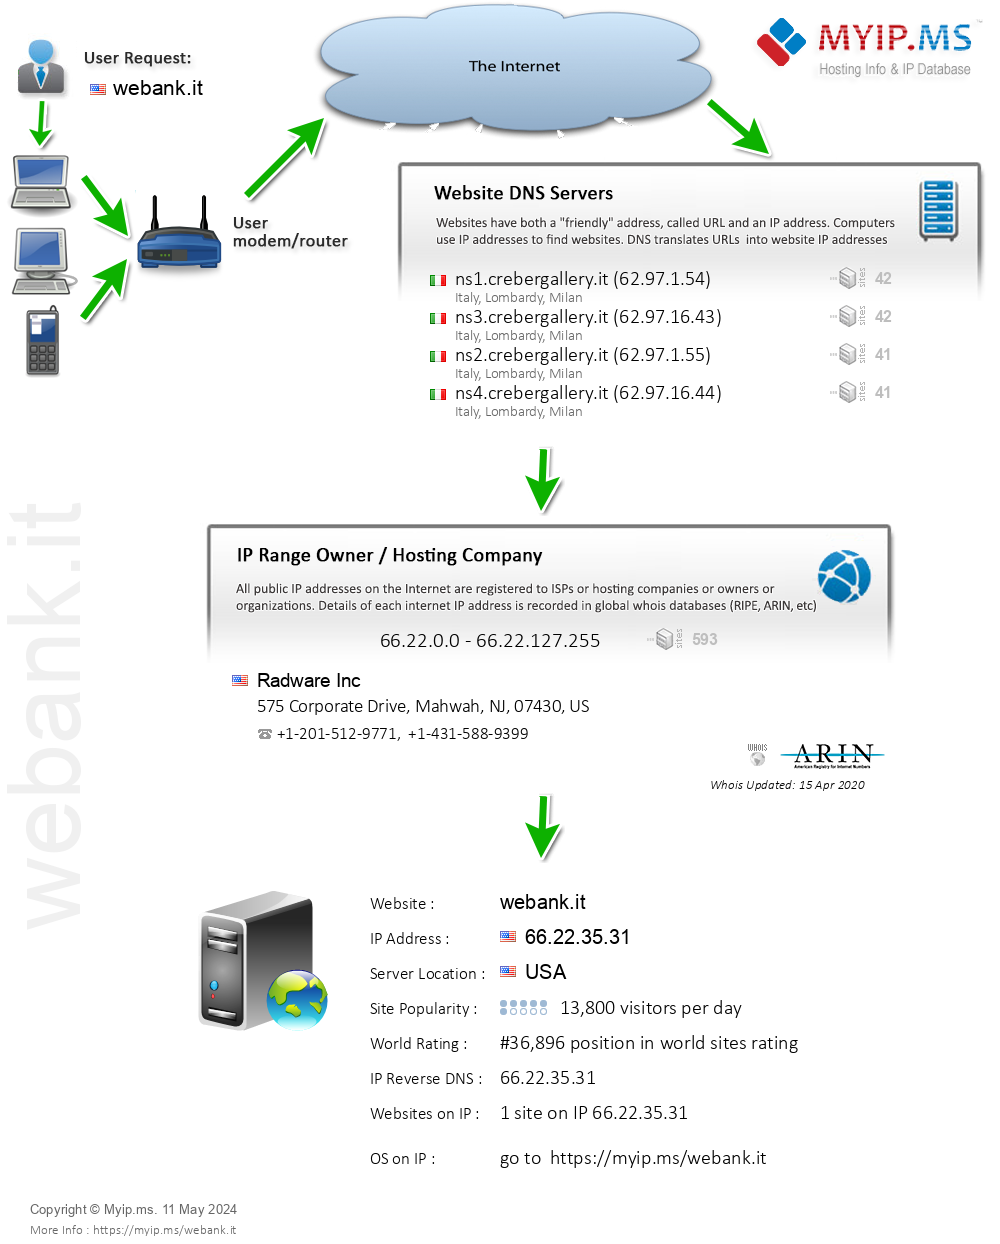 Webank.it - Website Hosting Visual IP Diagram